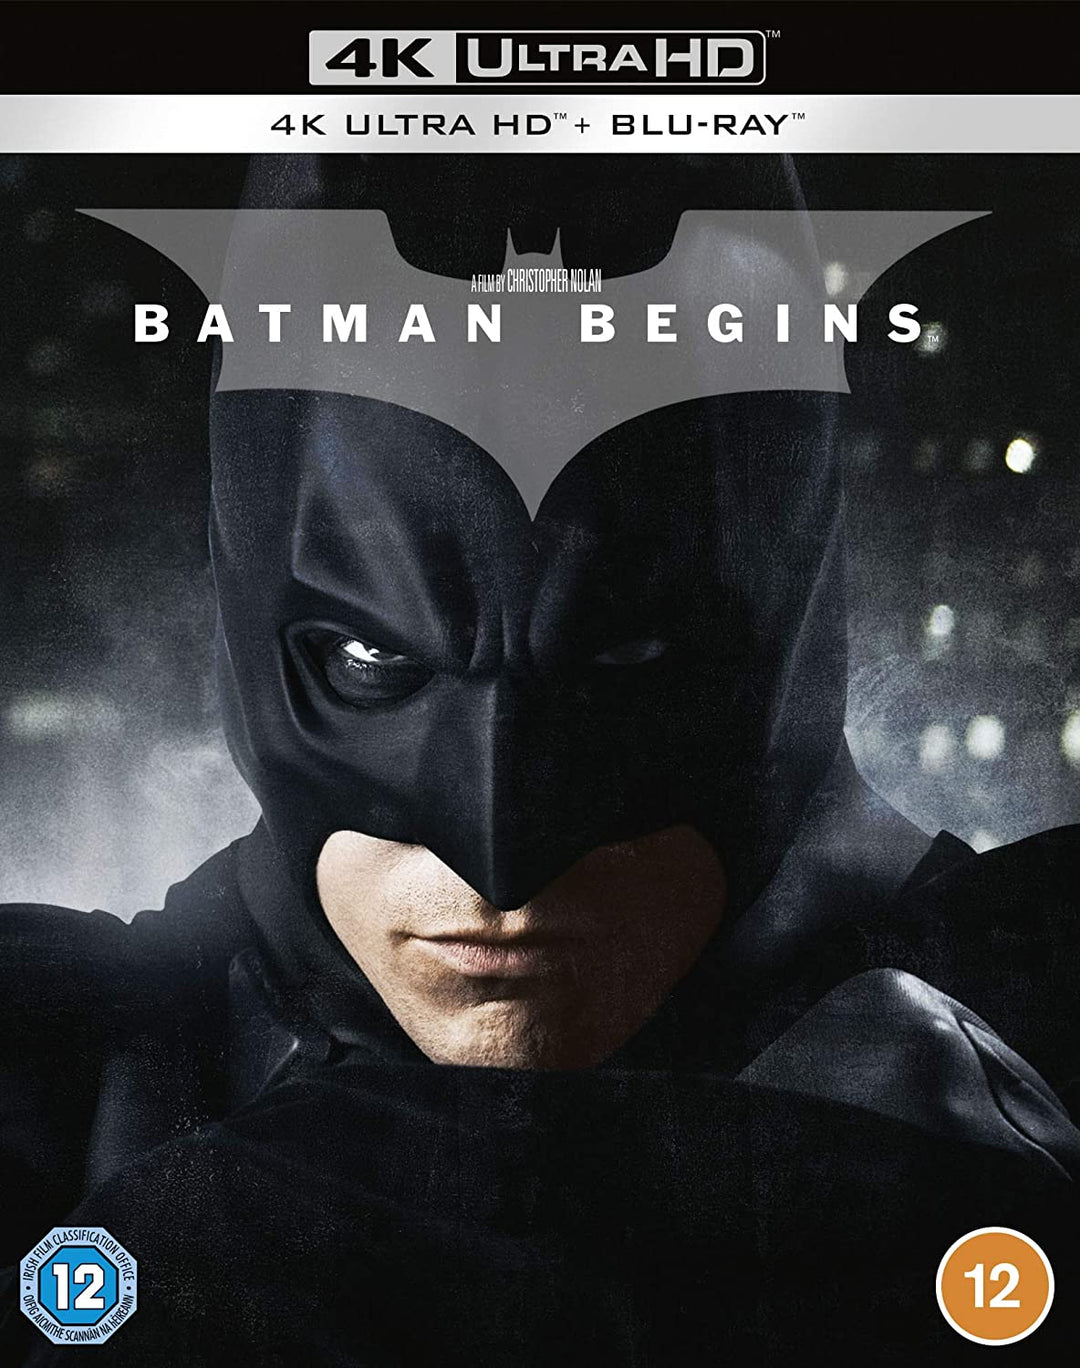 Batman Begins [2005] [Region Free] – Action/Fantasy [Blu-ray]